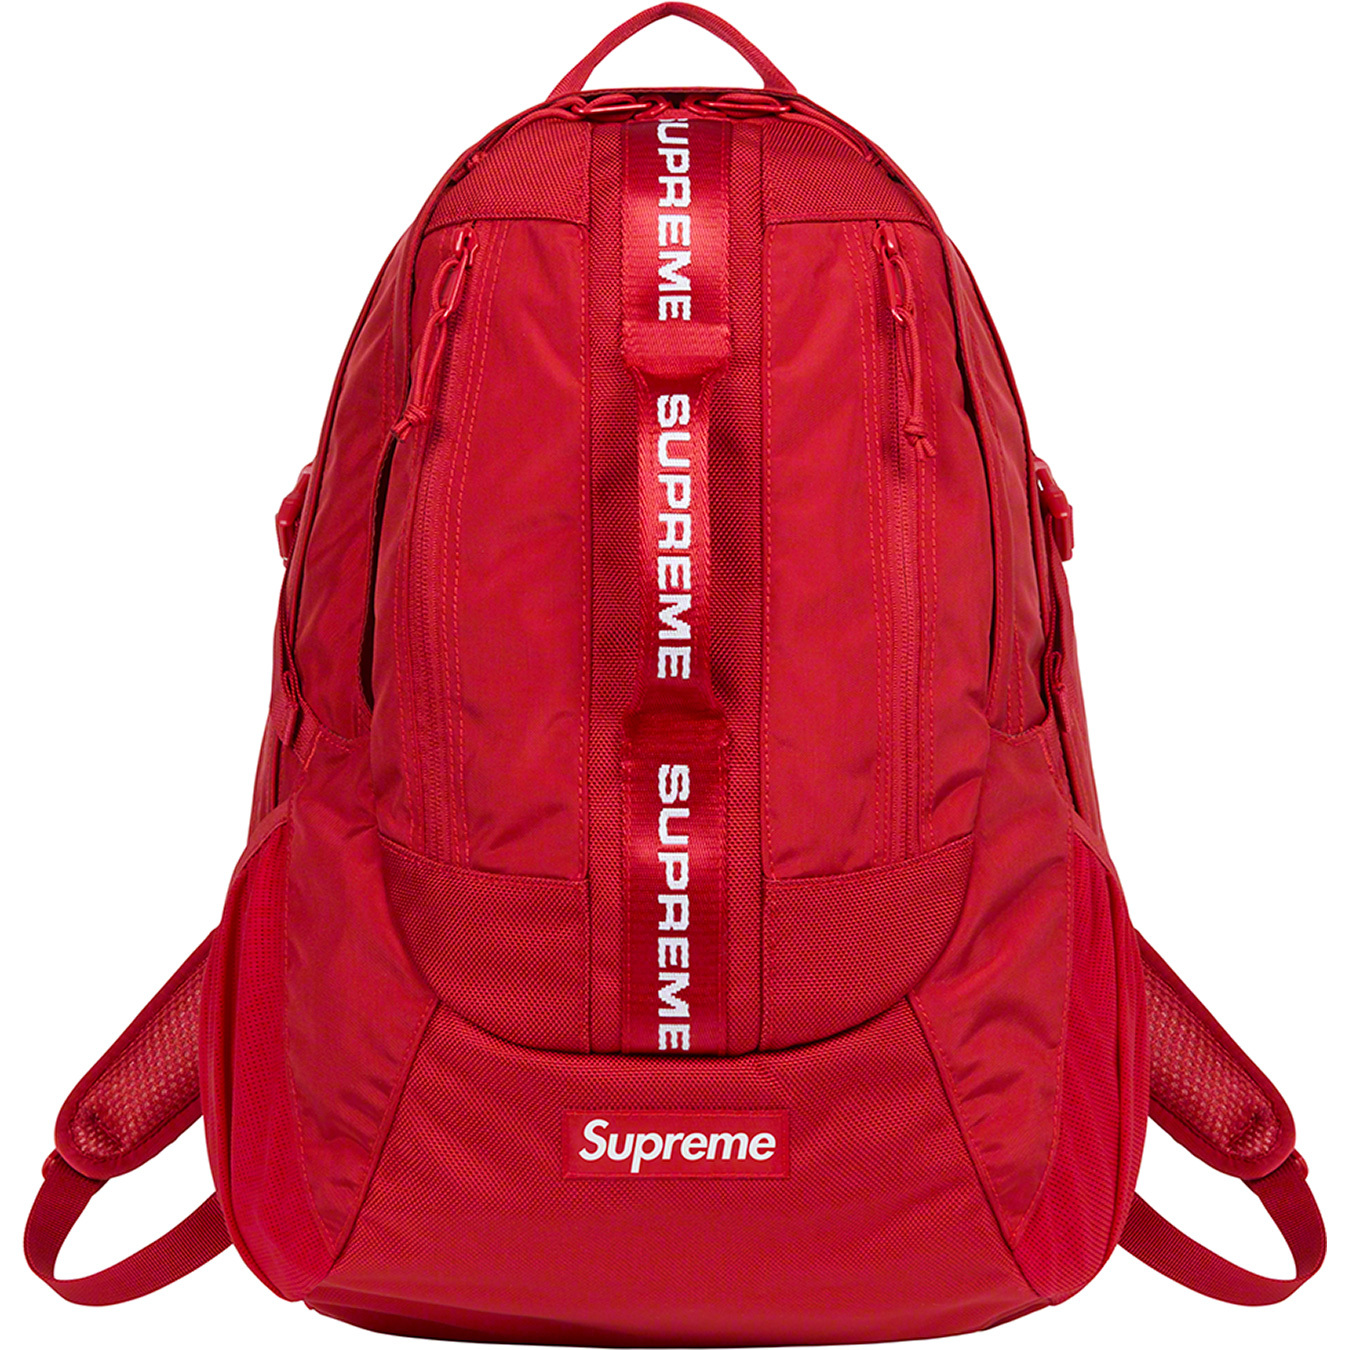 Supreme Backpack (FW22) Olive – YankeeKicks Online